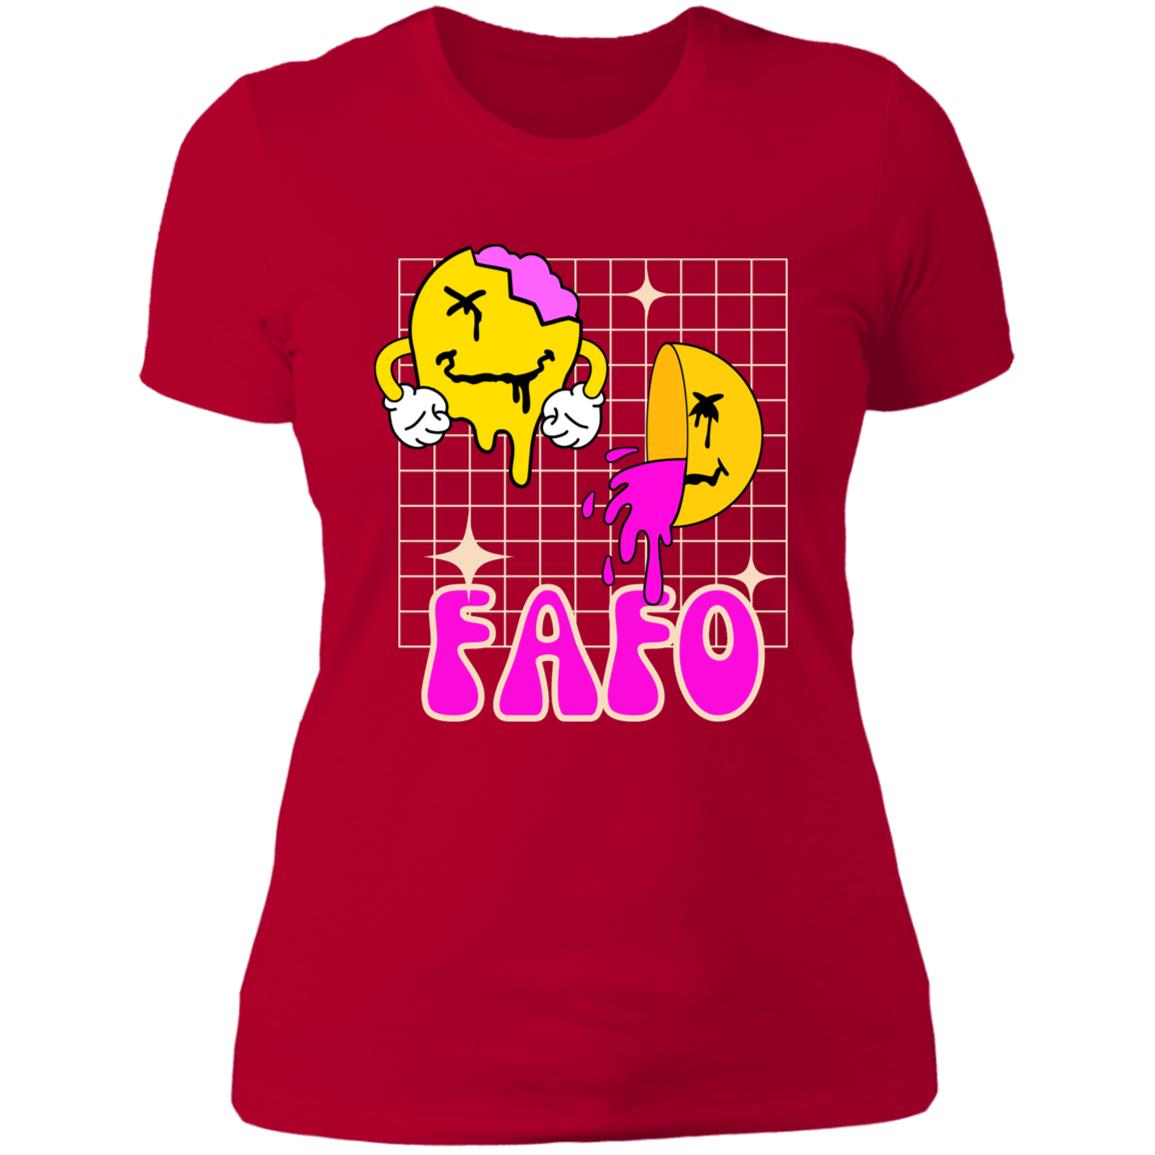 FAFO Fun Colorful Retro Ladies' Boyfriend T-Shirt - Expressive DeZien 